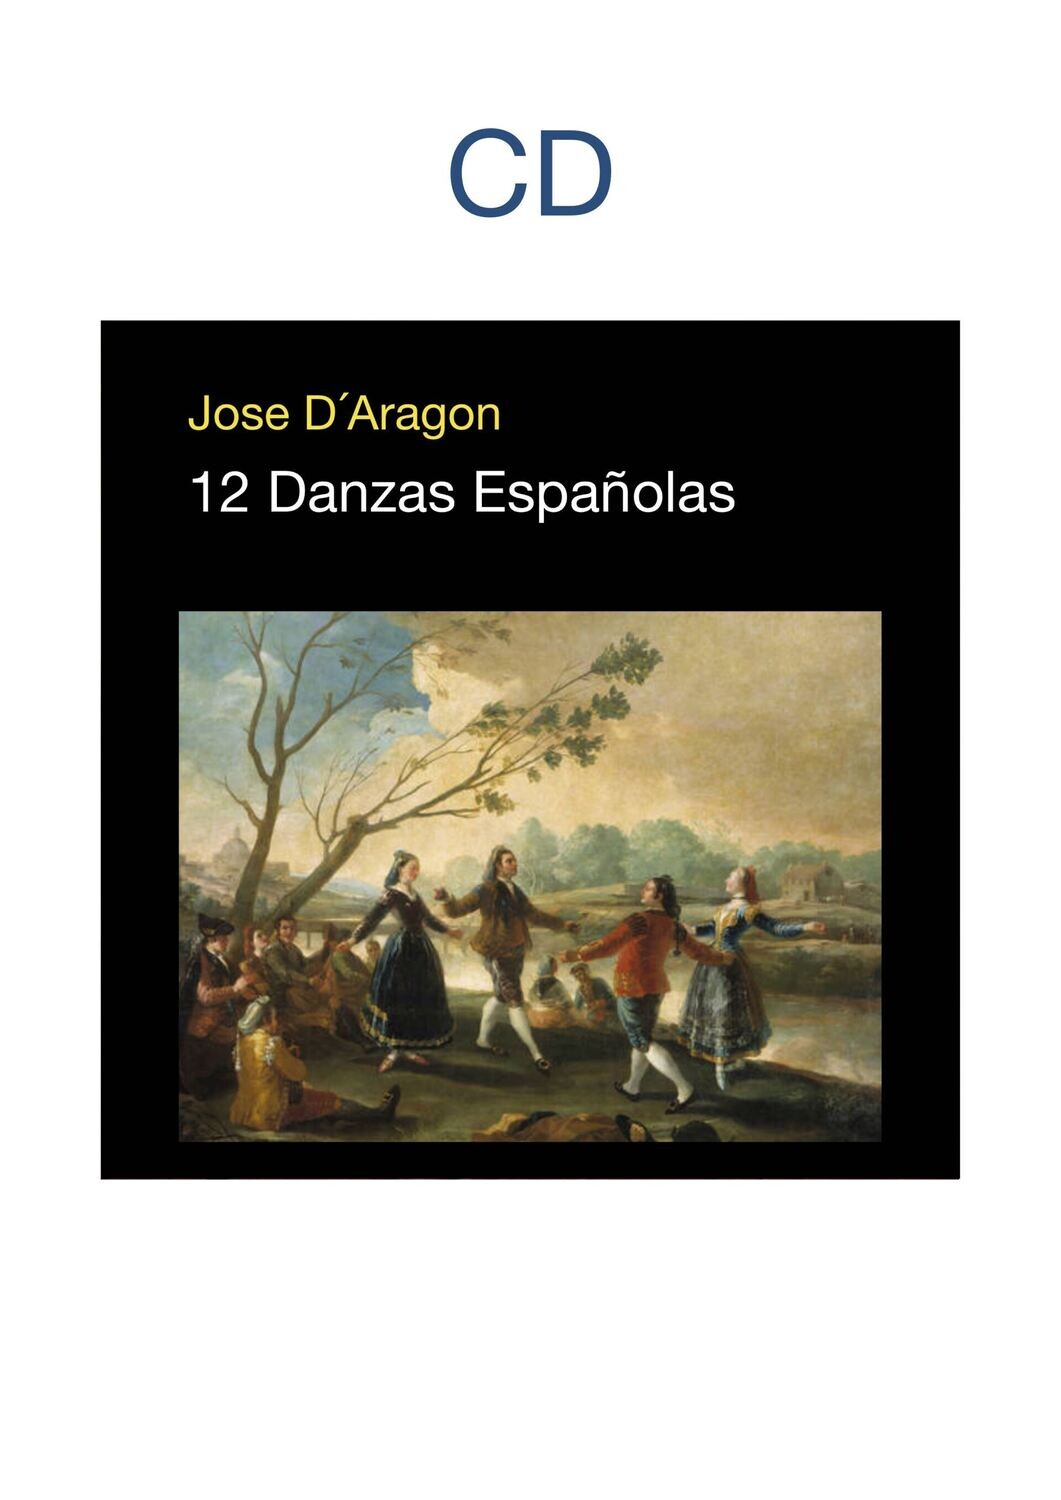 CD DOCE DANZAS ESPAÑOLAS Enrique Granados